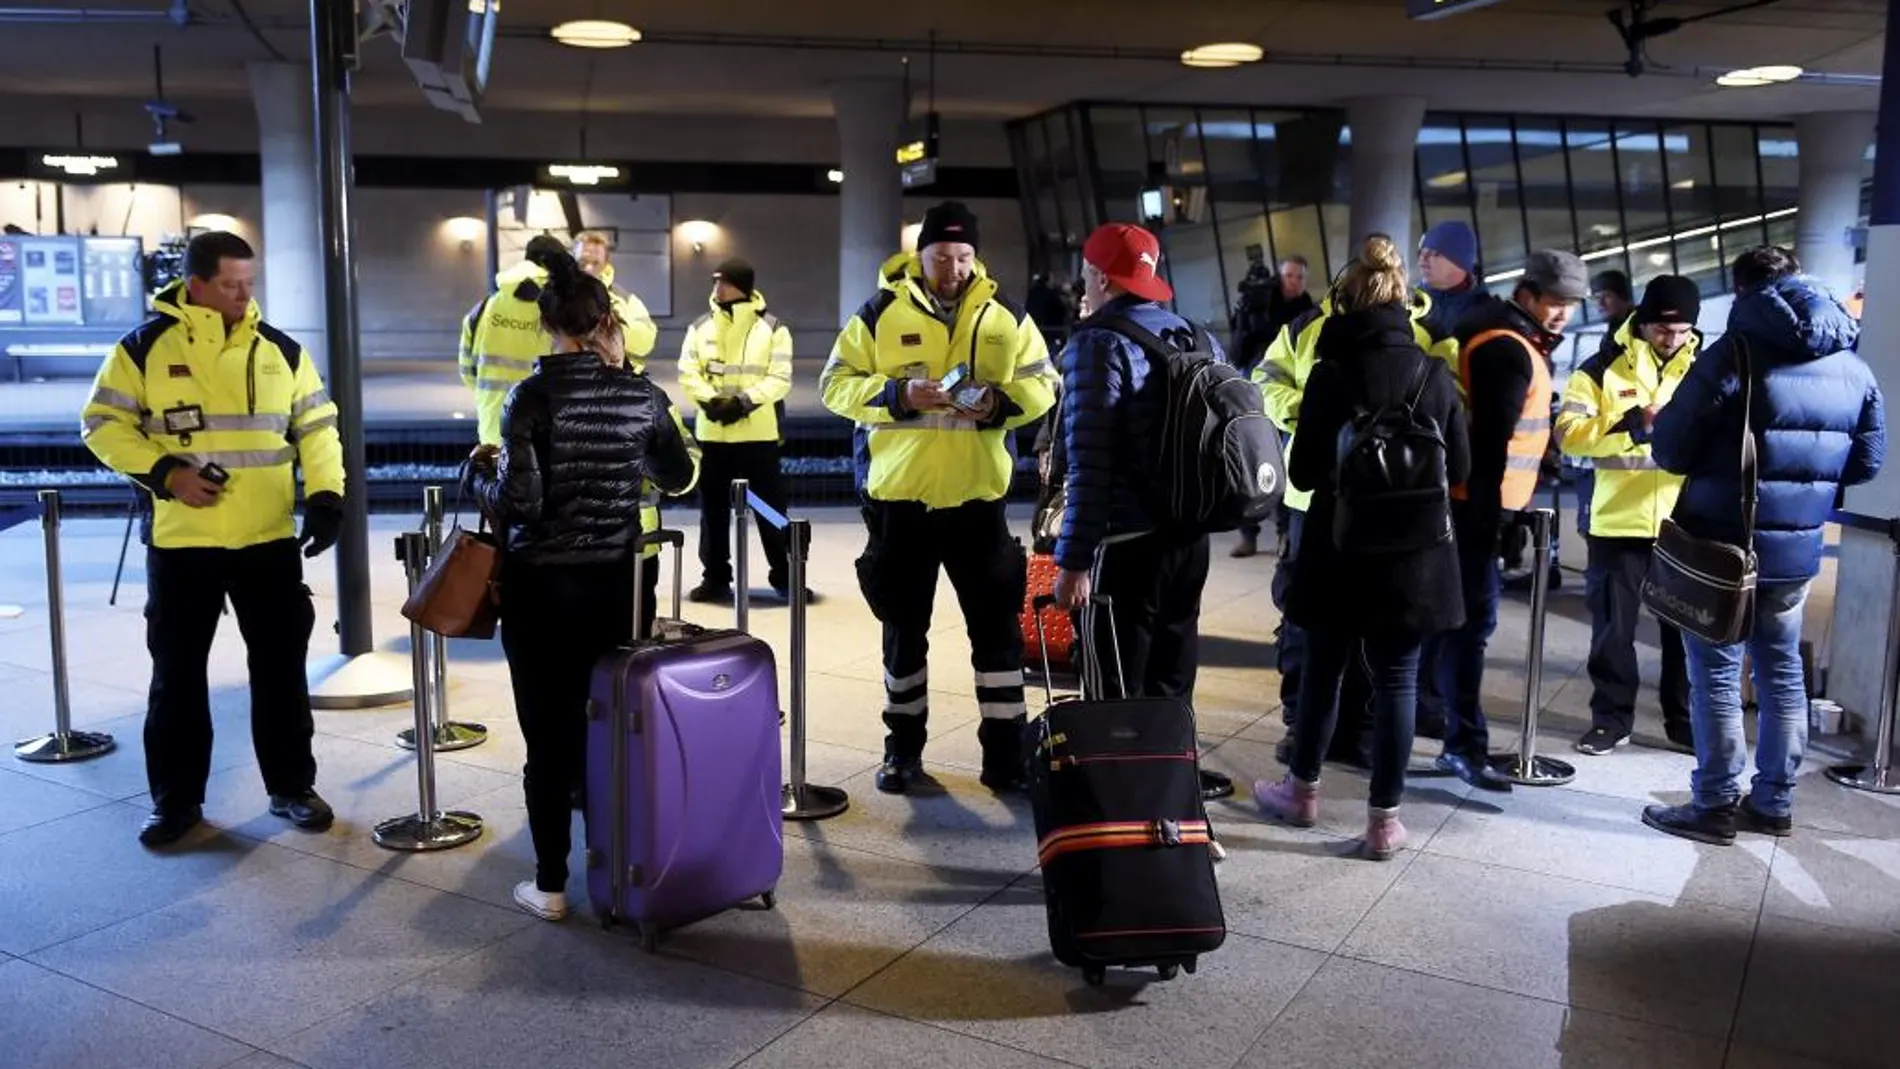 Los pasajeros de trenes, ferris o autobuses hacia Suecia deben mostrar su carné de identidad para que se les permita subir abordo.